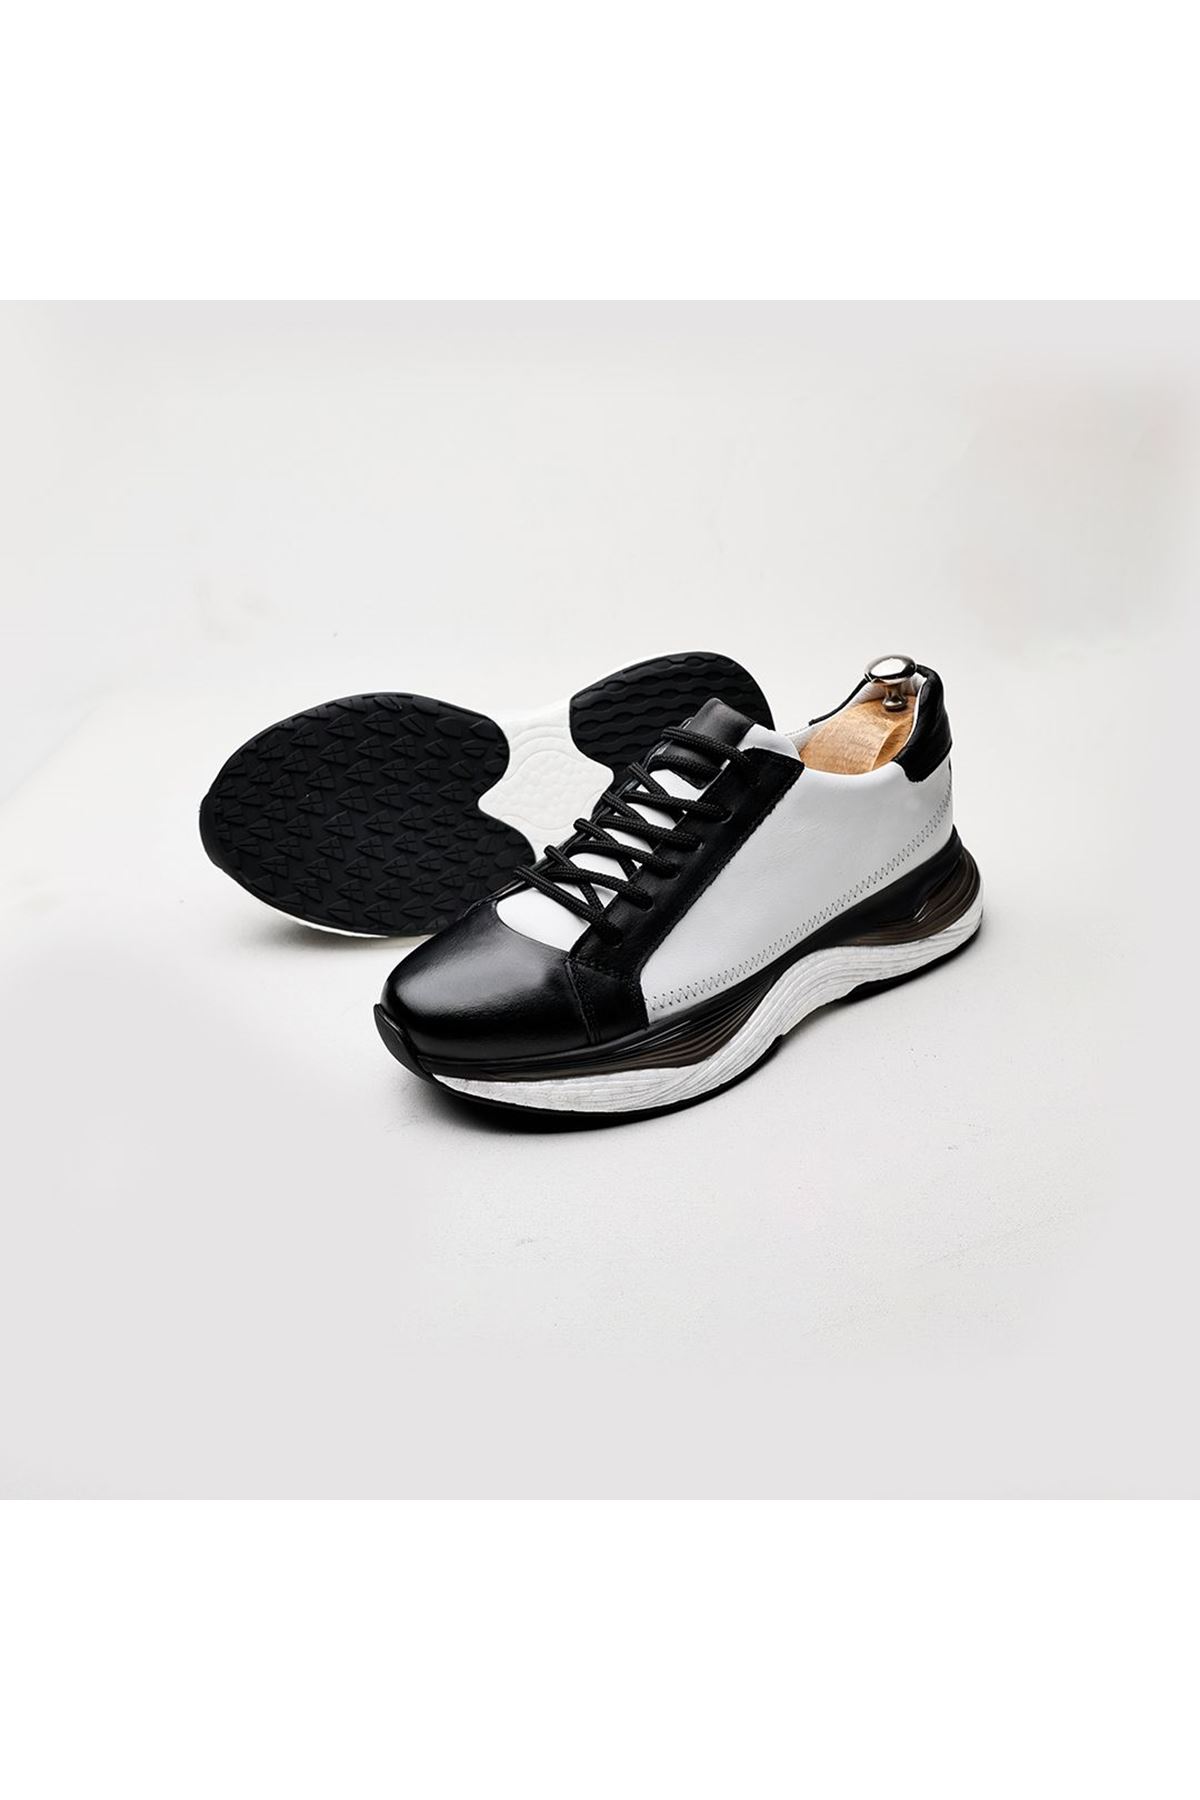 Boy Uzatan Gizli Topuklu Hakiki Deri Beyaz Siyah Matias Spor Ayakkabı MYY2041